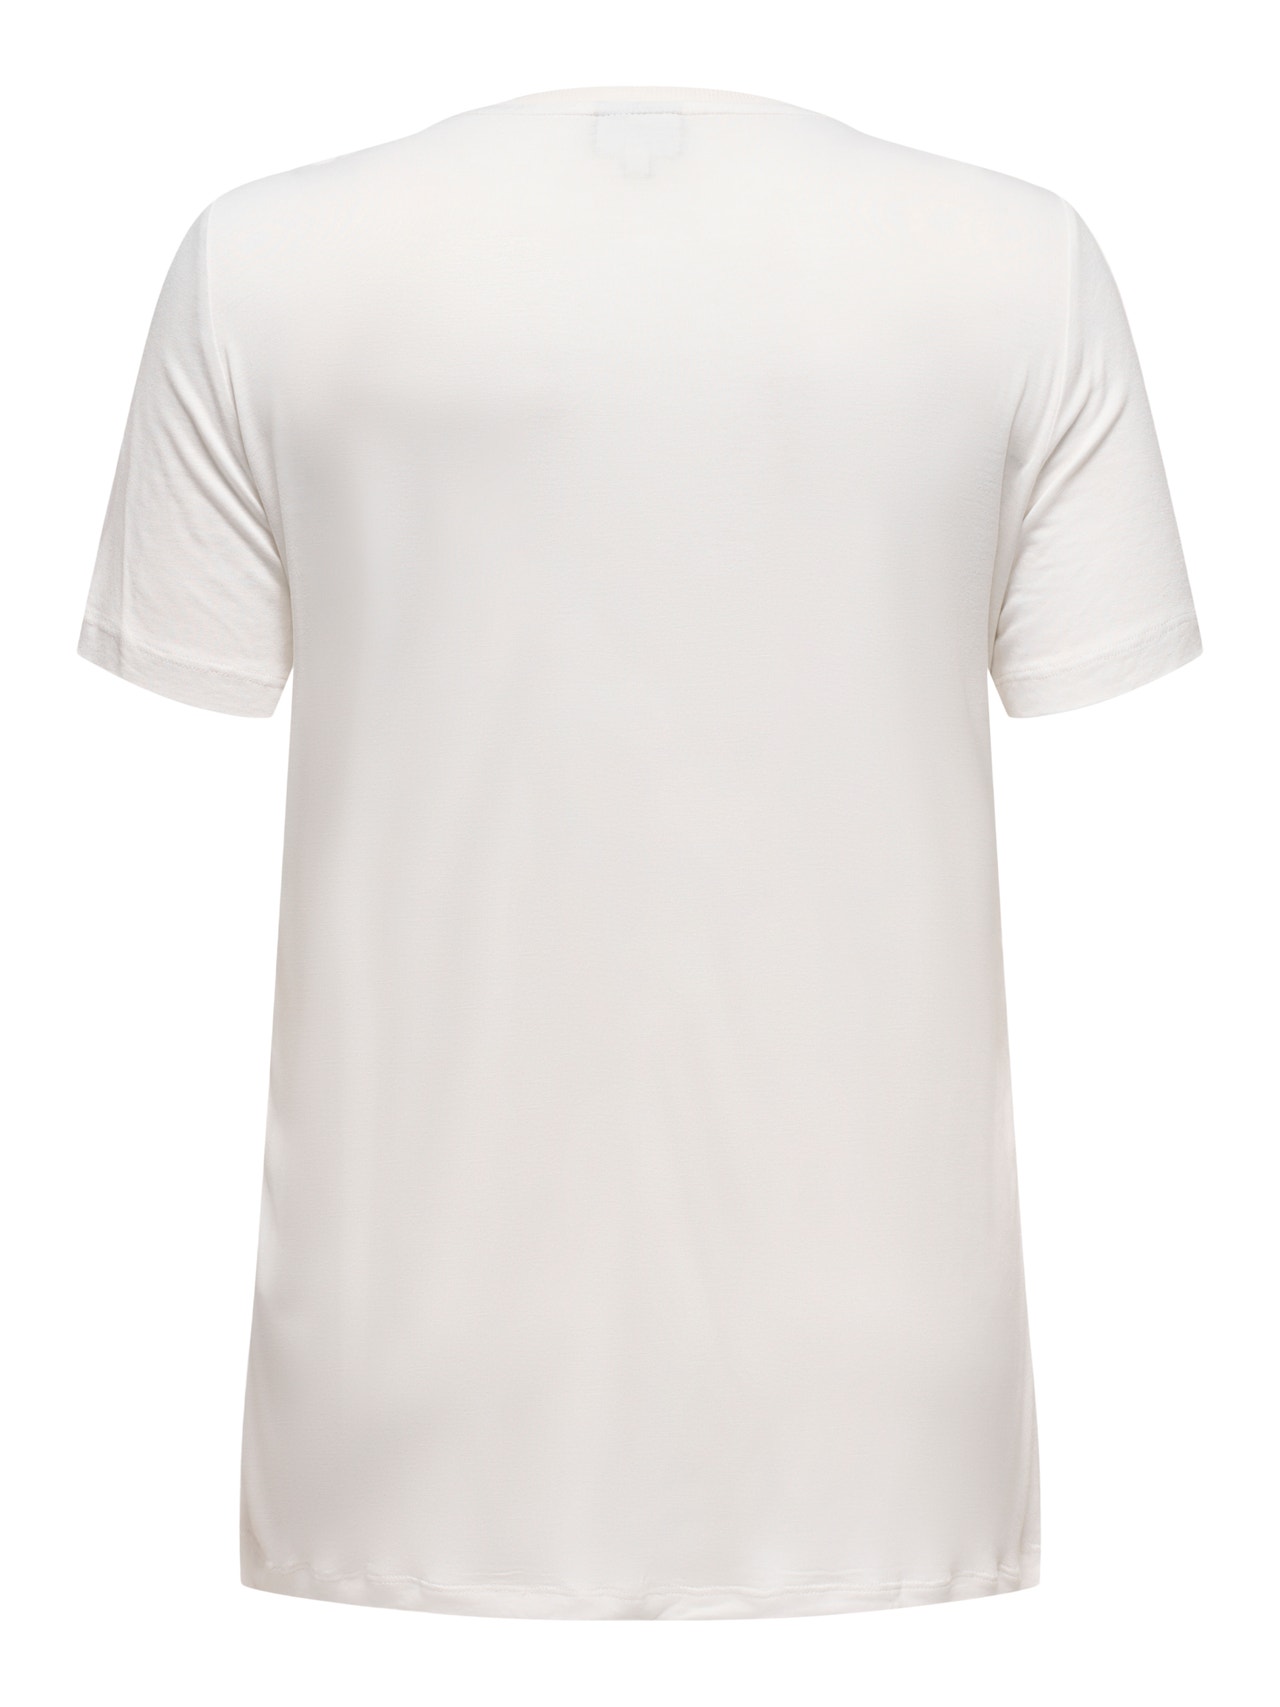 ONLY Regular fit O-hals T-shirt -Cloud Dancer - 15315315